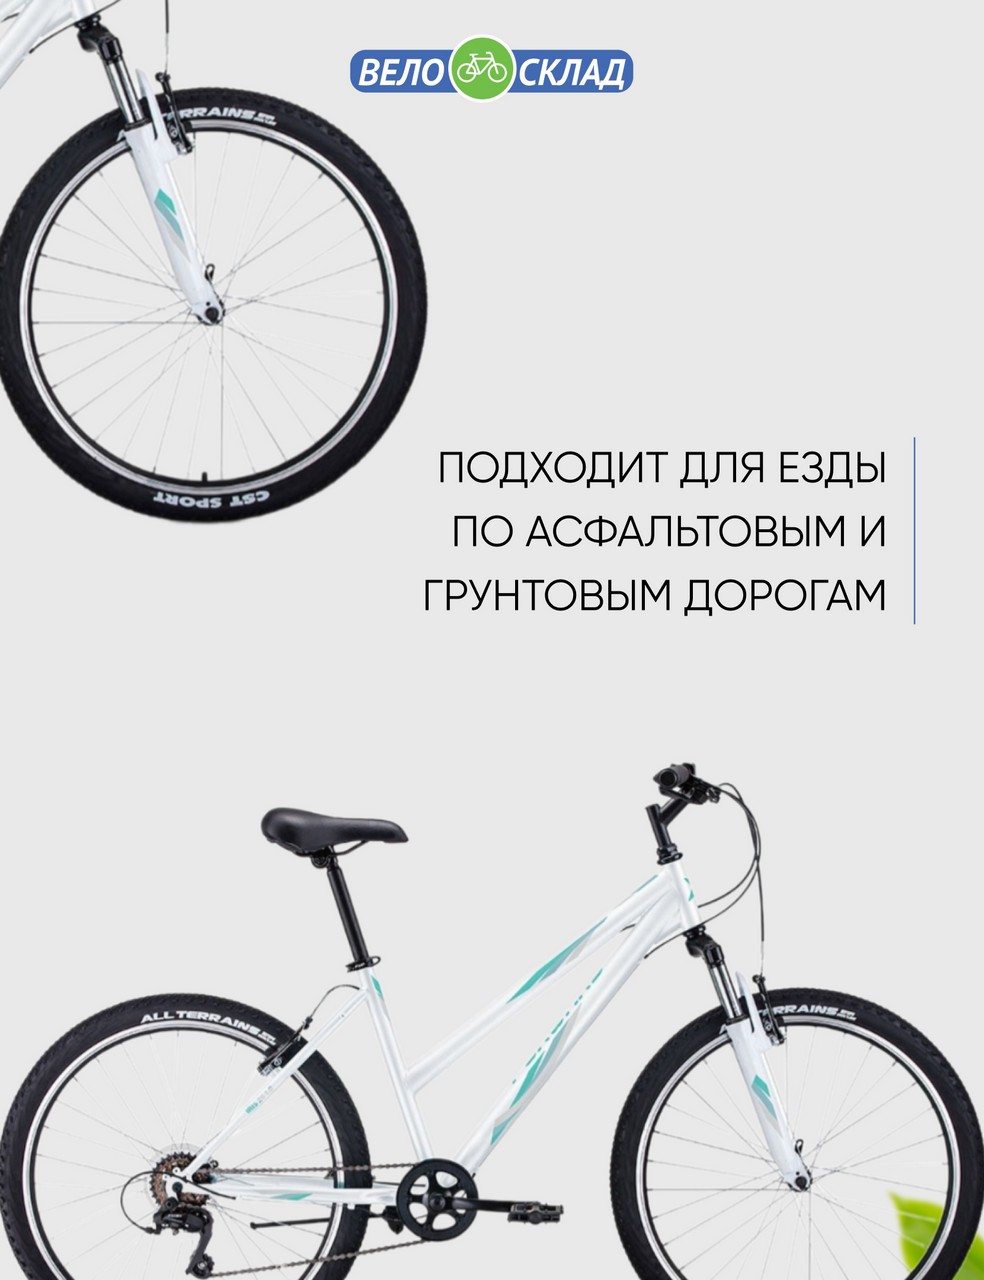 фото Женский велосипед forward iris 26 1.0, год 2022, цвет белый-зеленый, ростовка 17